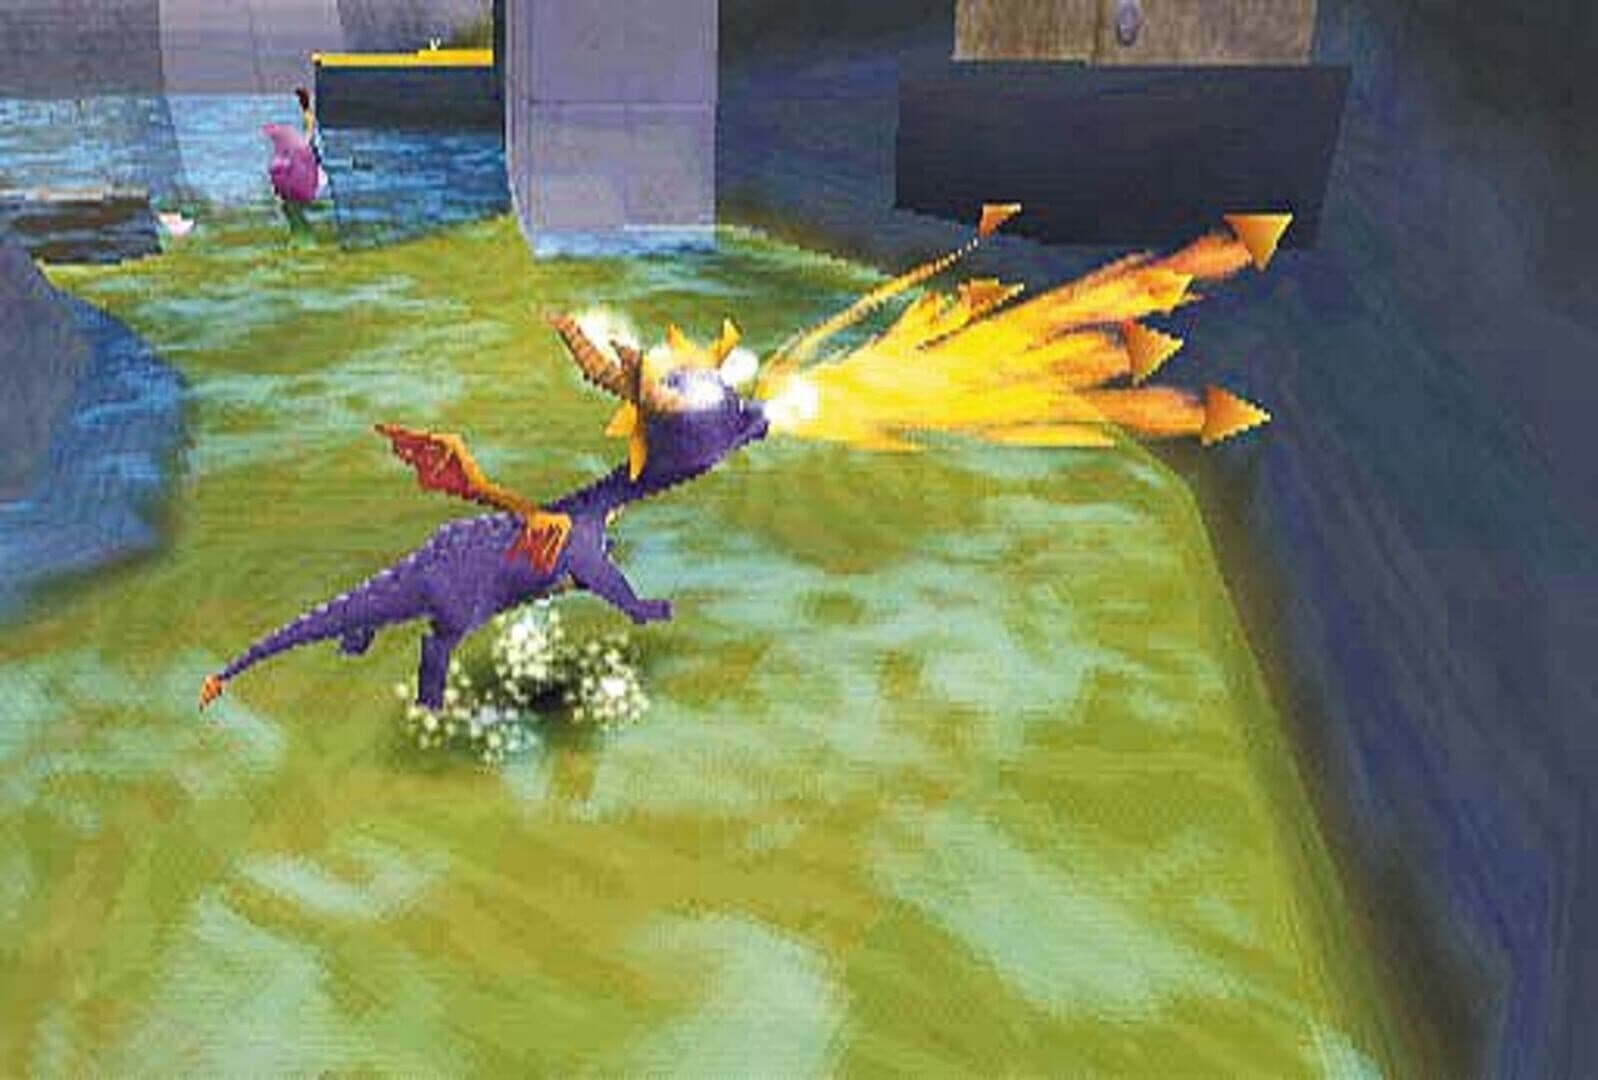 Spyro 2: Ripto's Rage! Image